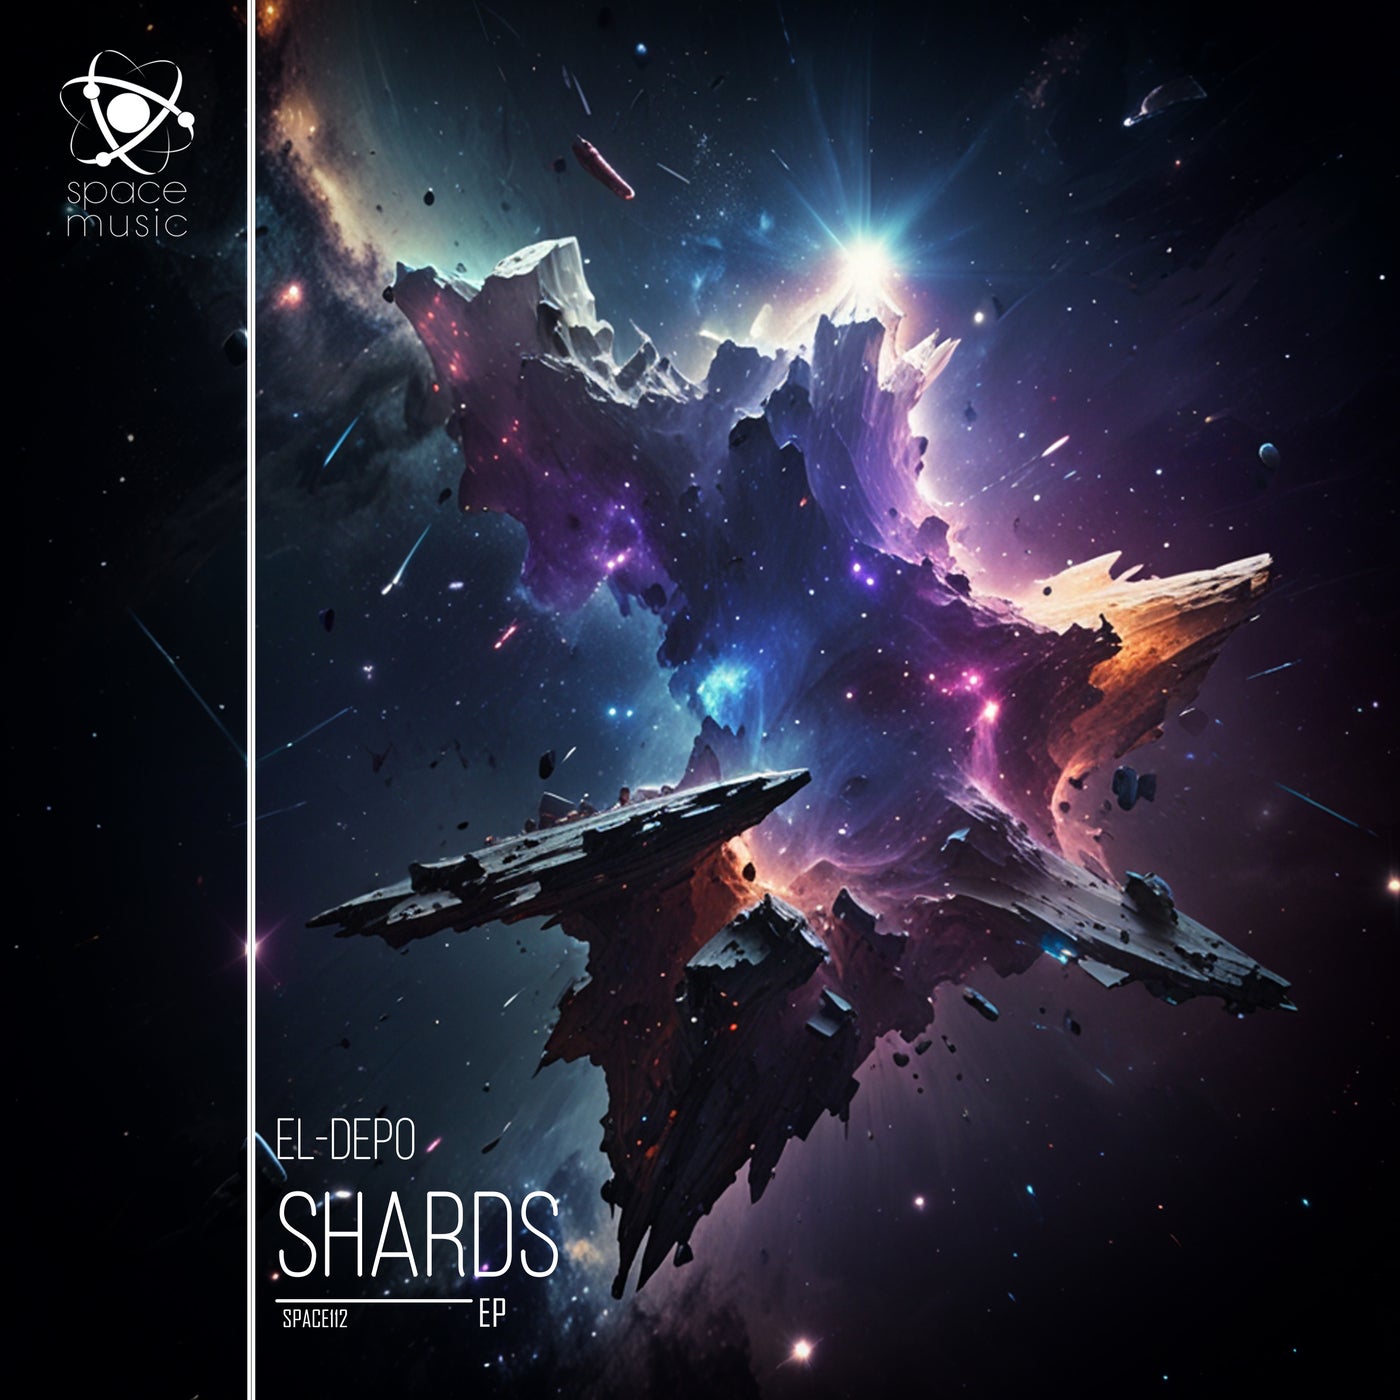 Shards EP